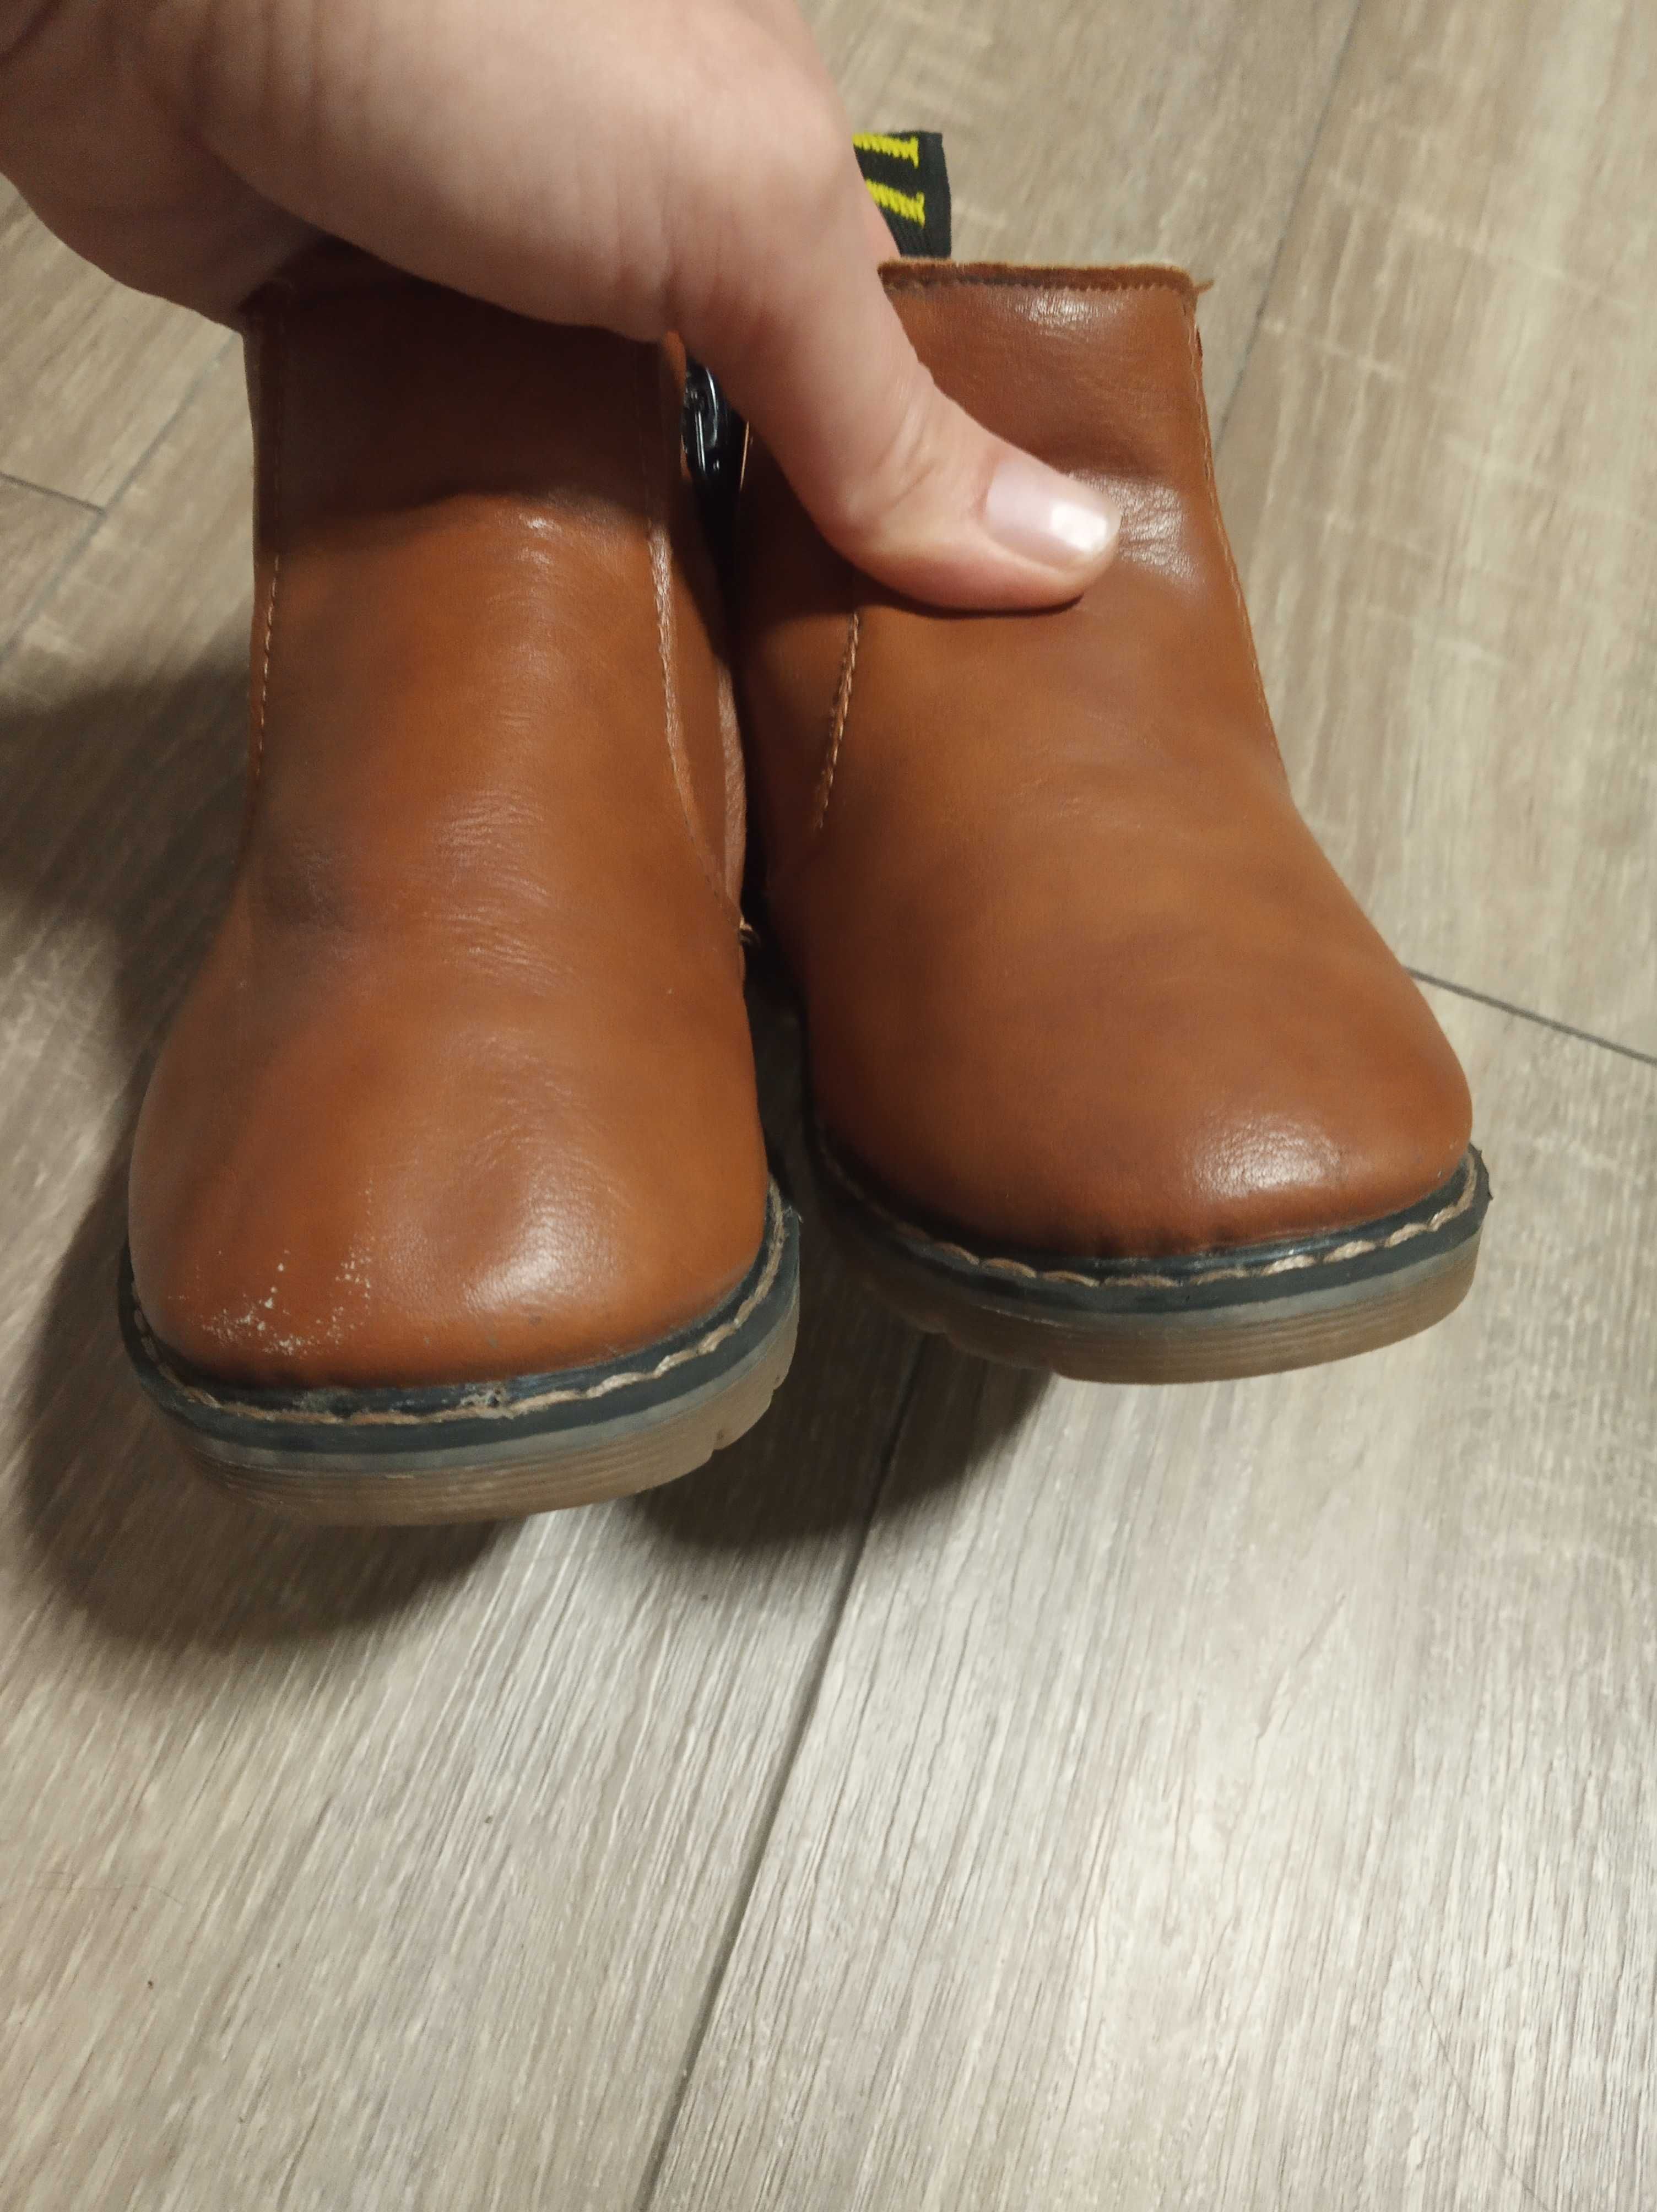 Ботинки, полусапожки Еврозима/Деми 23-24 рр Шкіряні черевики чоботи